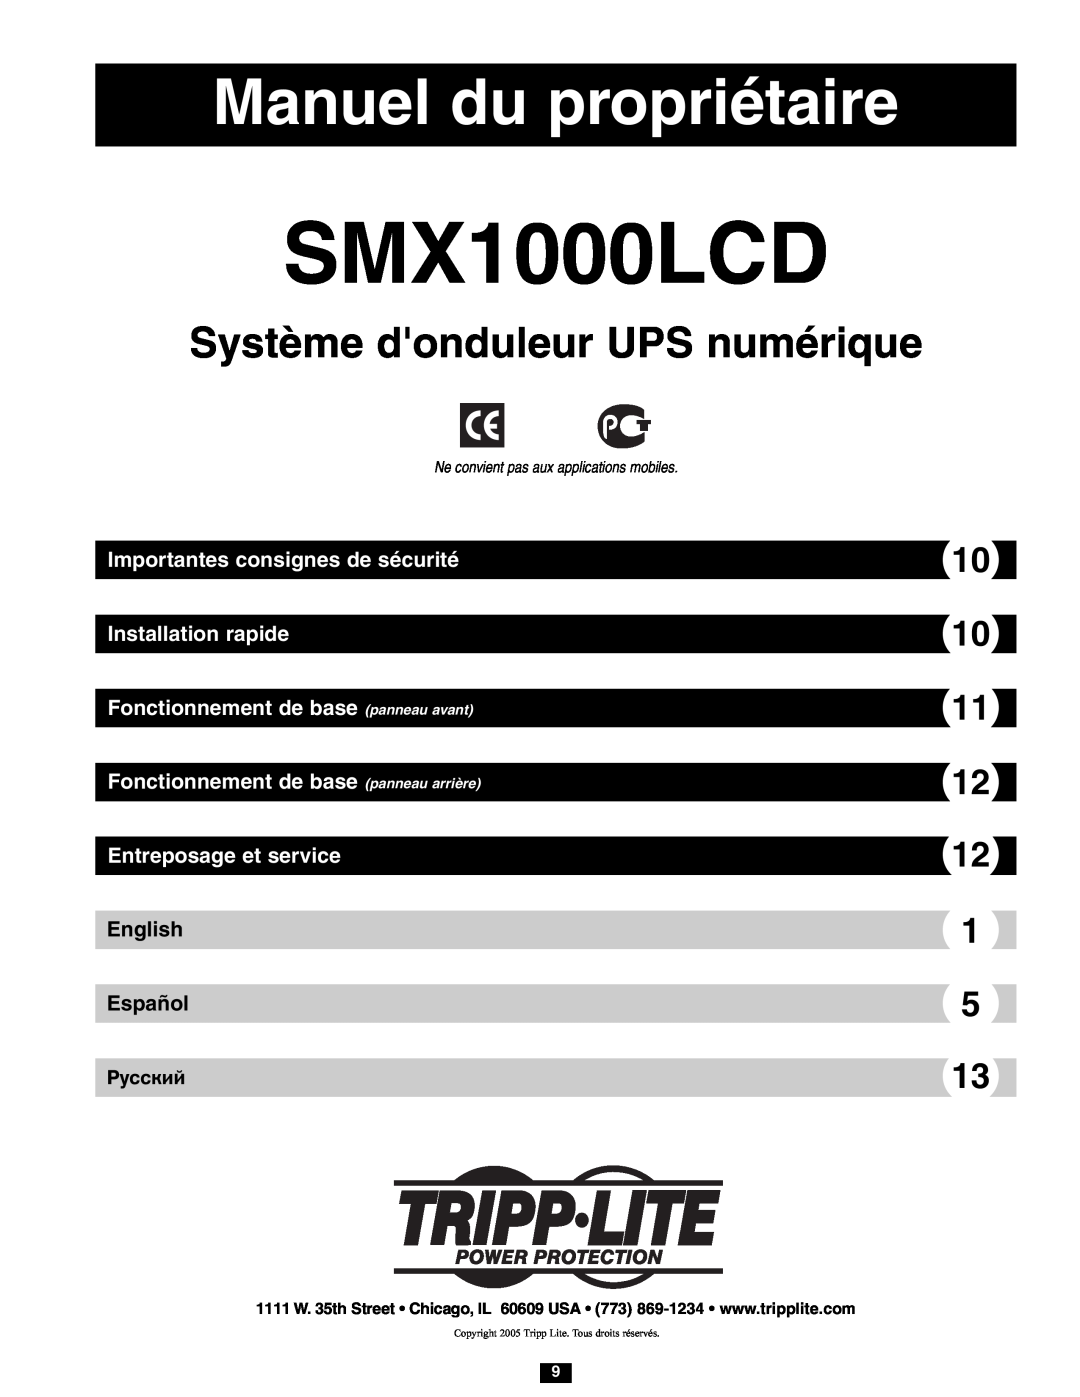 Tripp Lite SMX1000LCD owner manual Manuel du propriétaire, Système donduleur UPS numérique, English Español, Póññêèé 